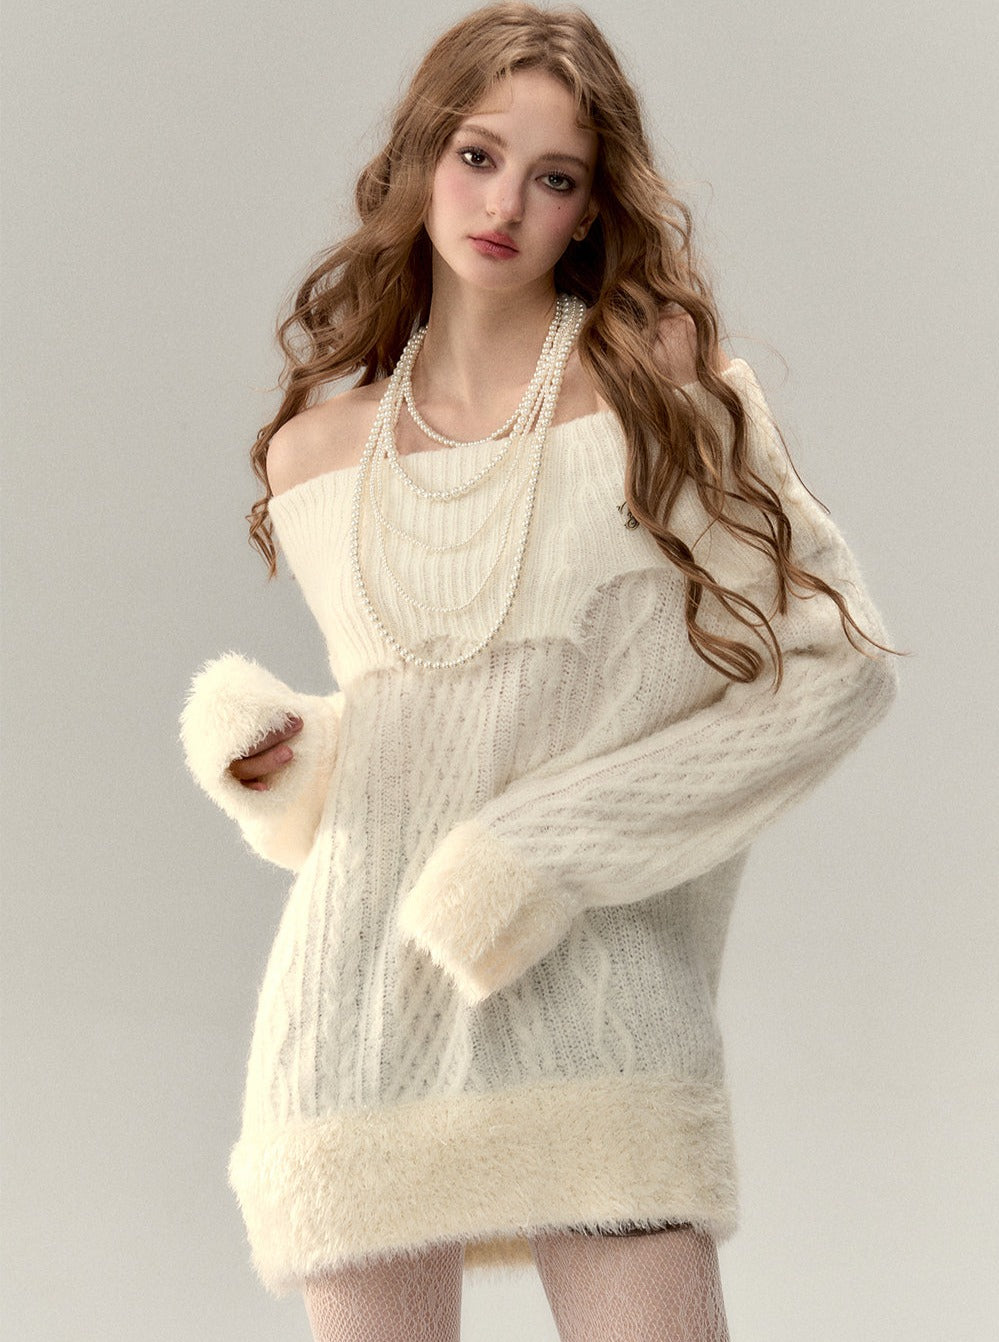 One-shoulder slant-shoulder two-wear knitted dress